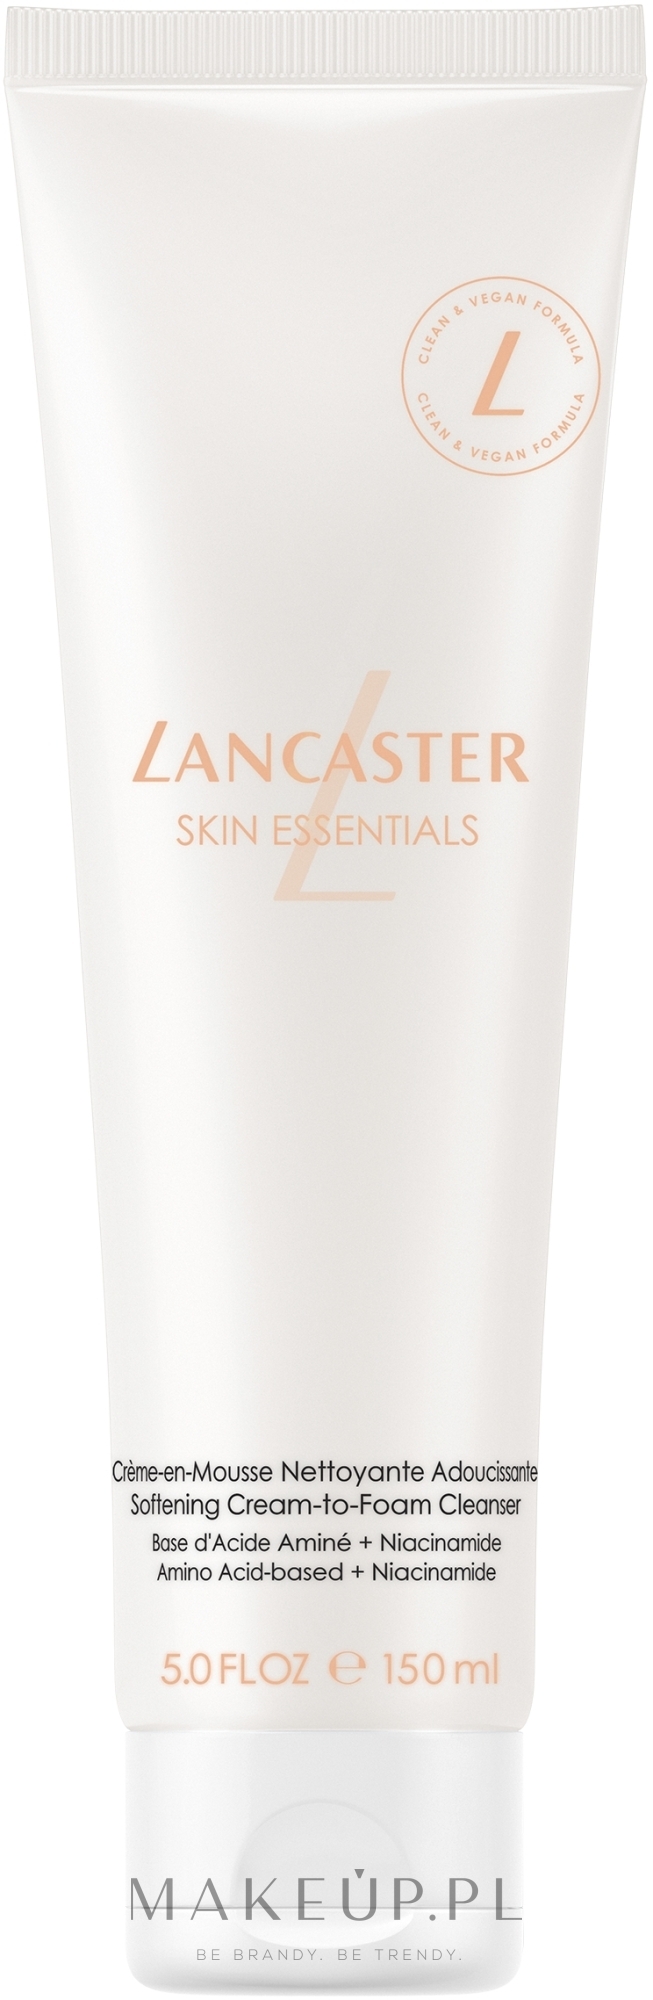 Krem-pianka do mycia twarzy - Lancaster Skin Essentials Softening Cream-to-Foam Cleanser — Zdjęcie 150 ml